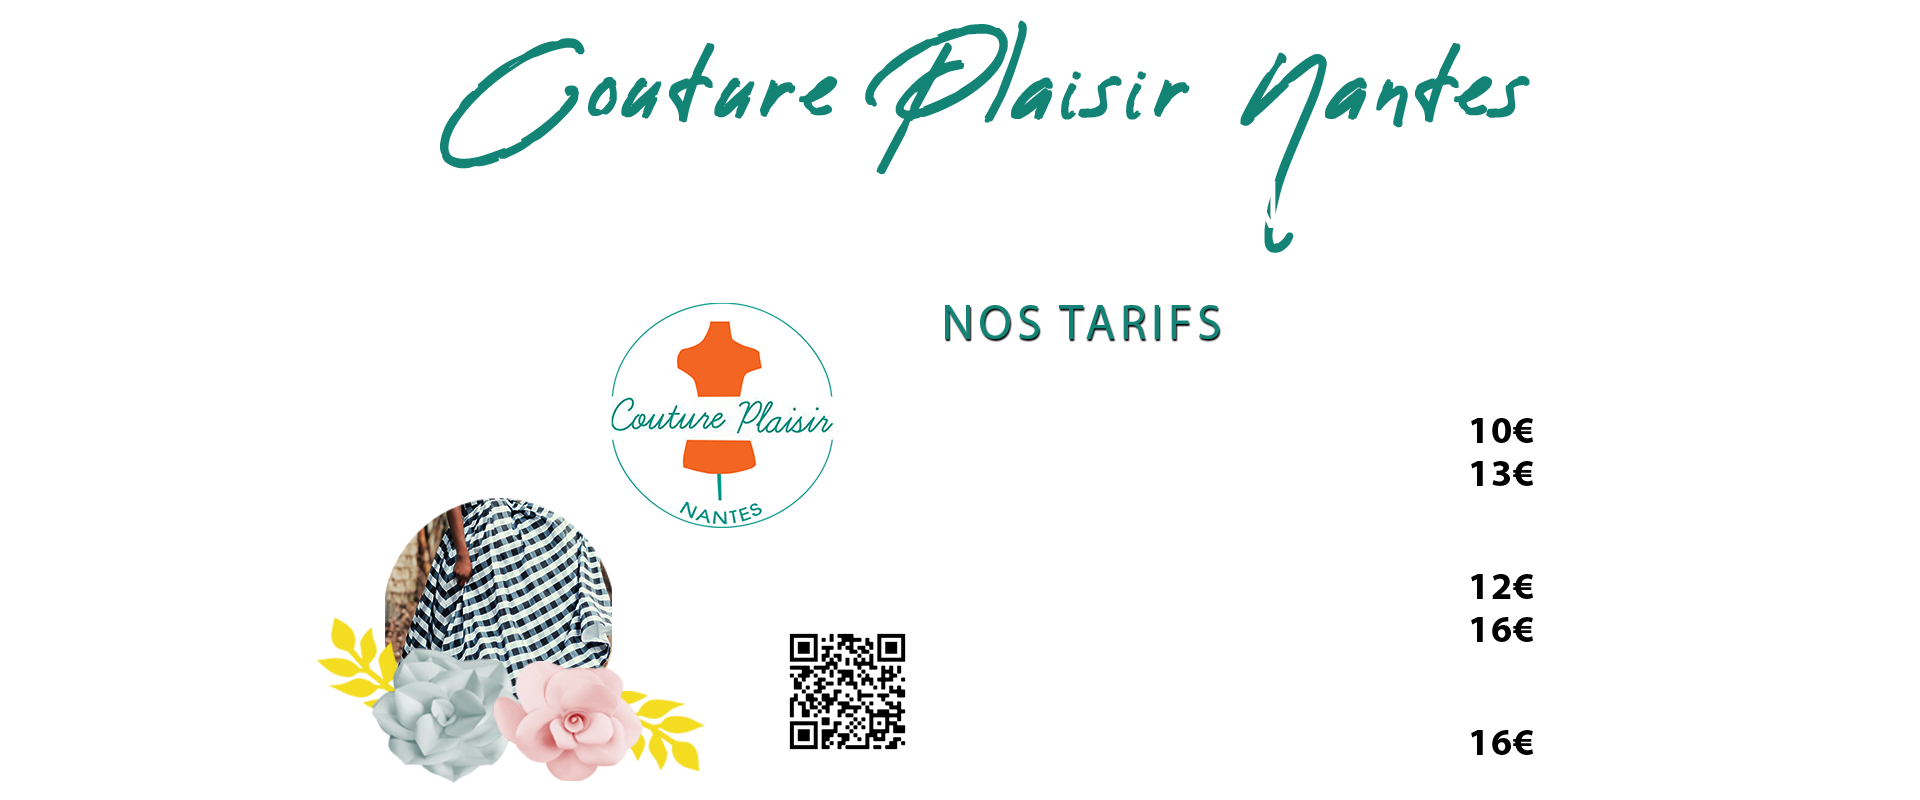 Extrait de tarification de l'association Couture Plaisir Nantes | Couture Retouche Bottière Nantes